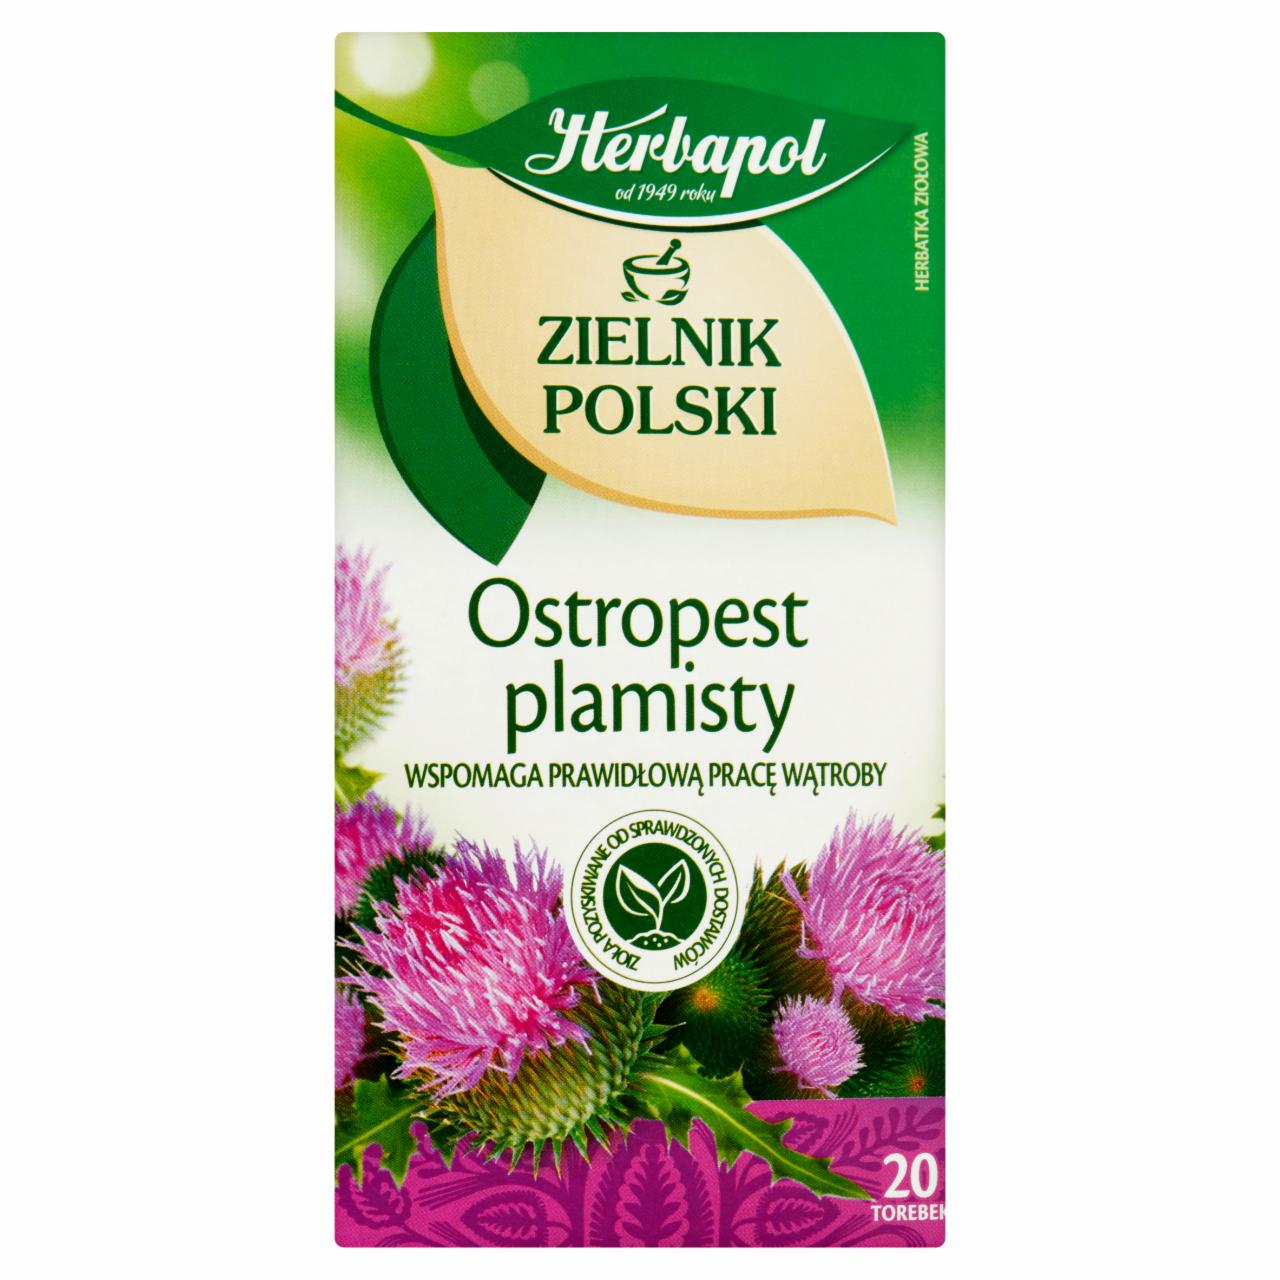 Zdjęcia - Herbapol Zielnik Polski Ostropest plamisty Herbatka ziołowa 40 g (20 x 2 g)